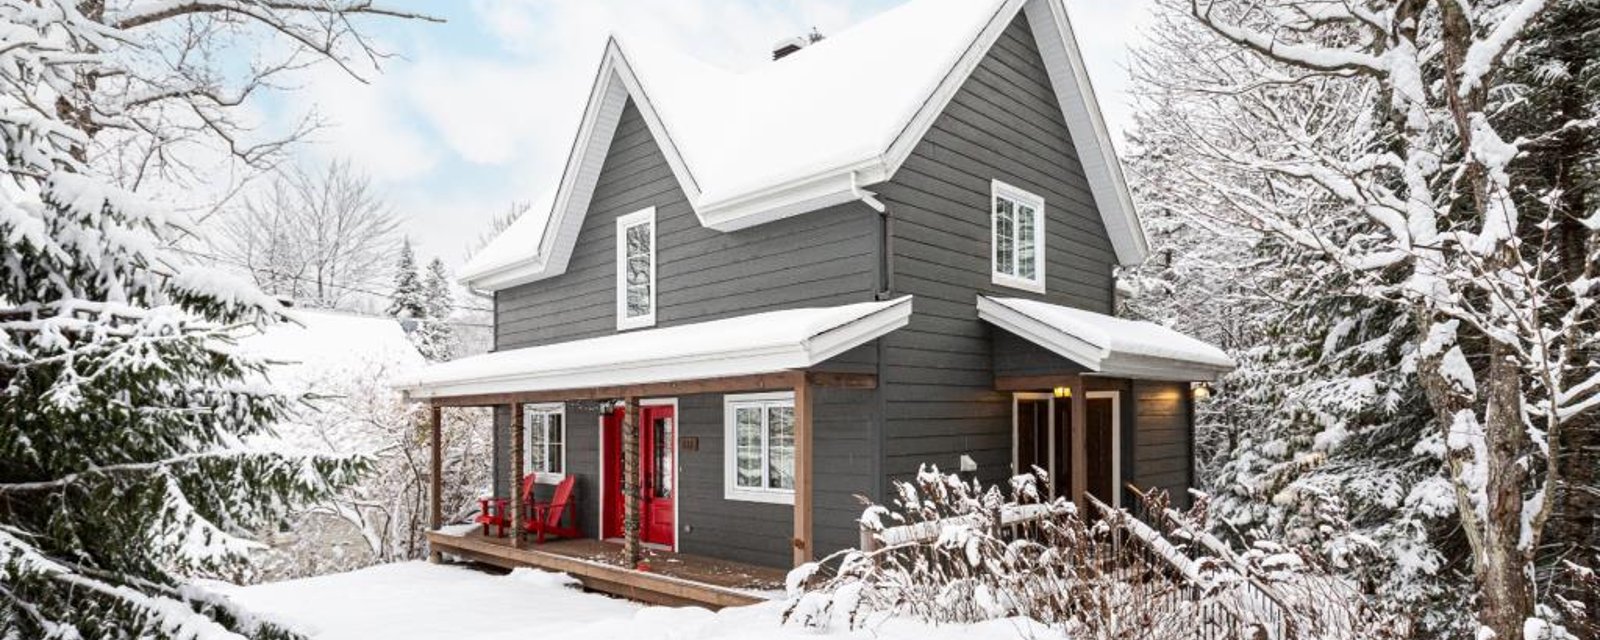 Lieu de cocooning par excellence à proximité des pentes de ski: un magnifique cottage à moins d'1 hr de Montréal